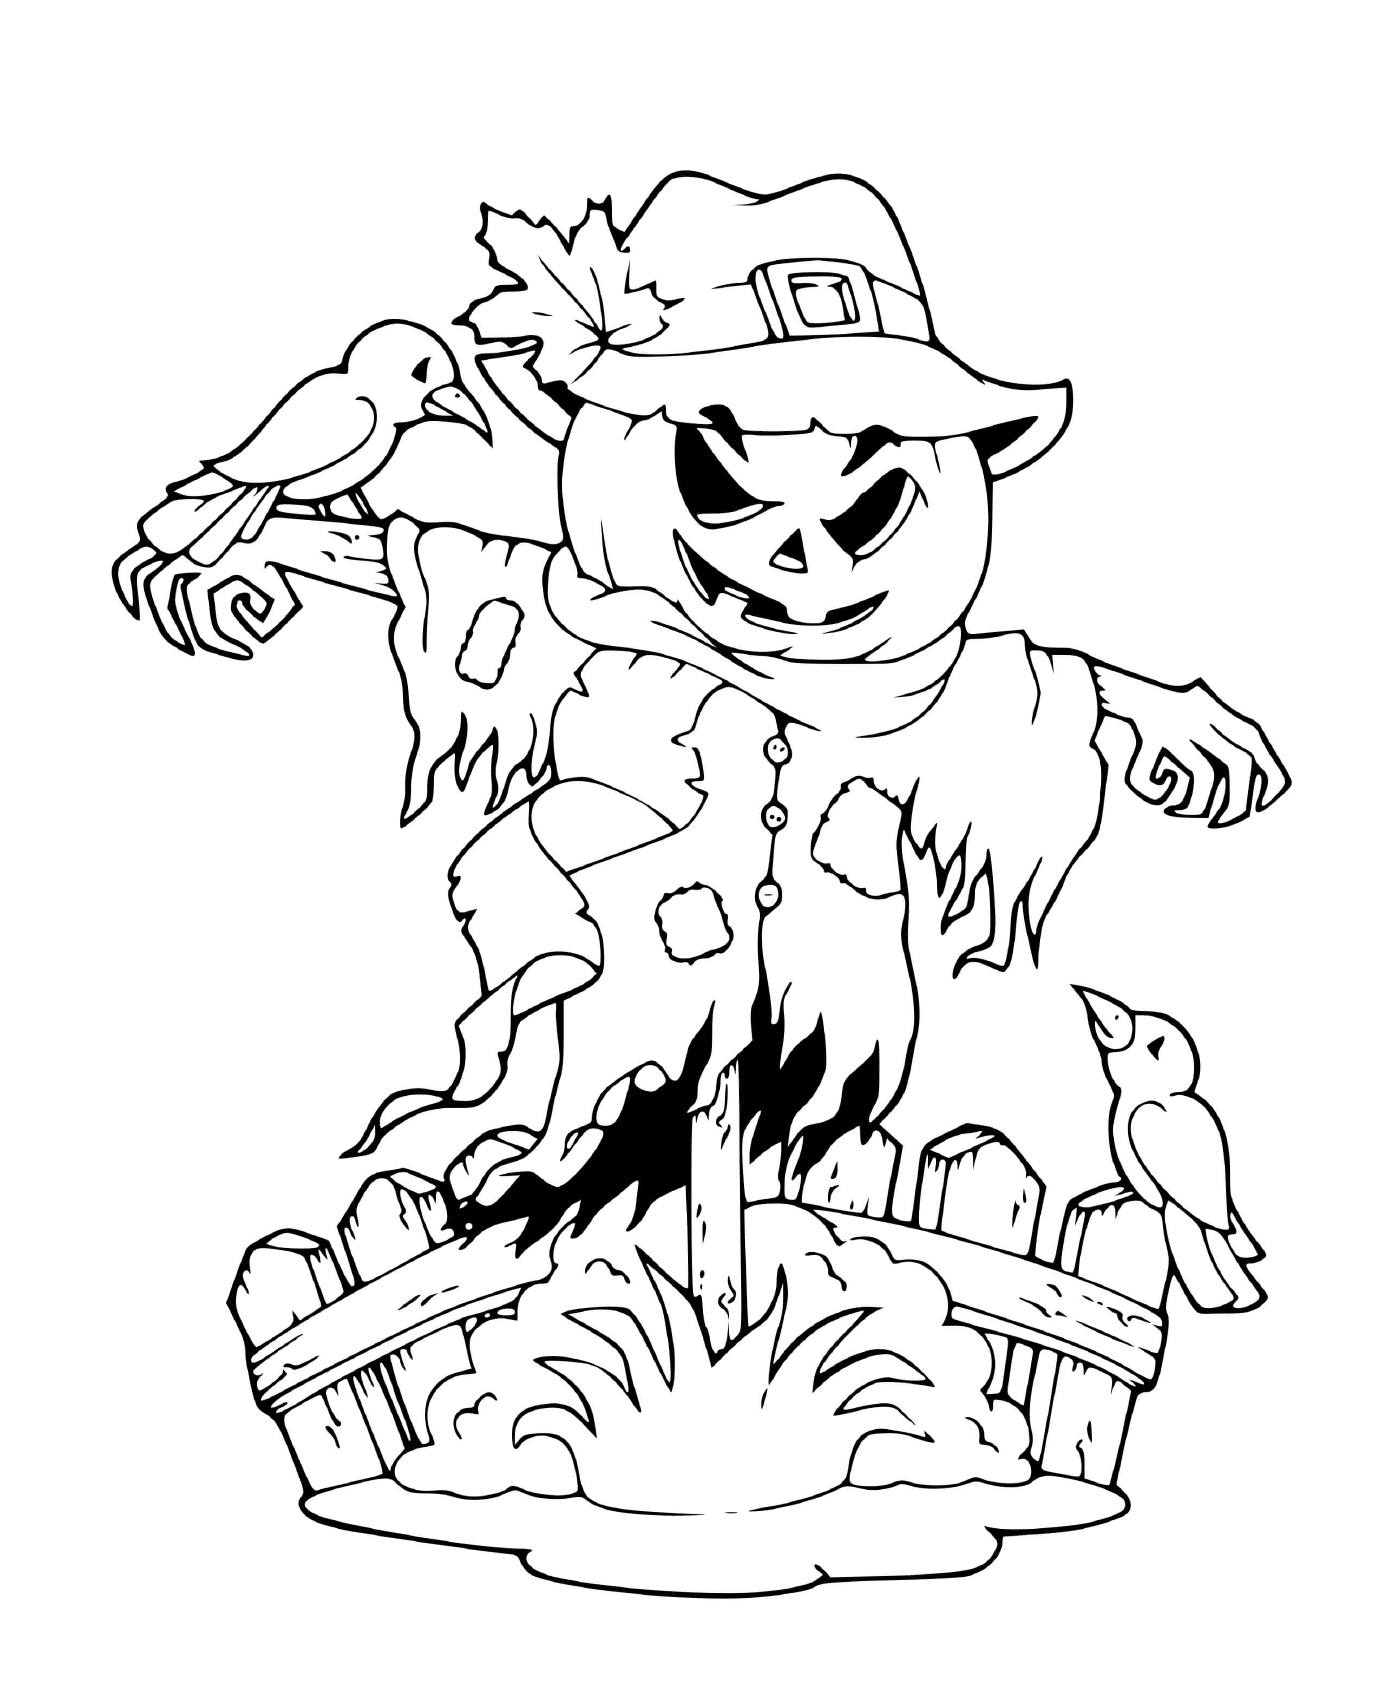  A scarecrow 